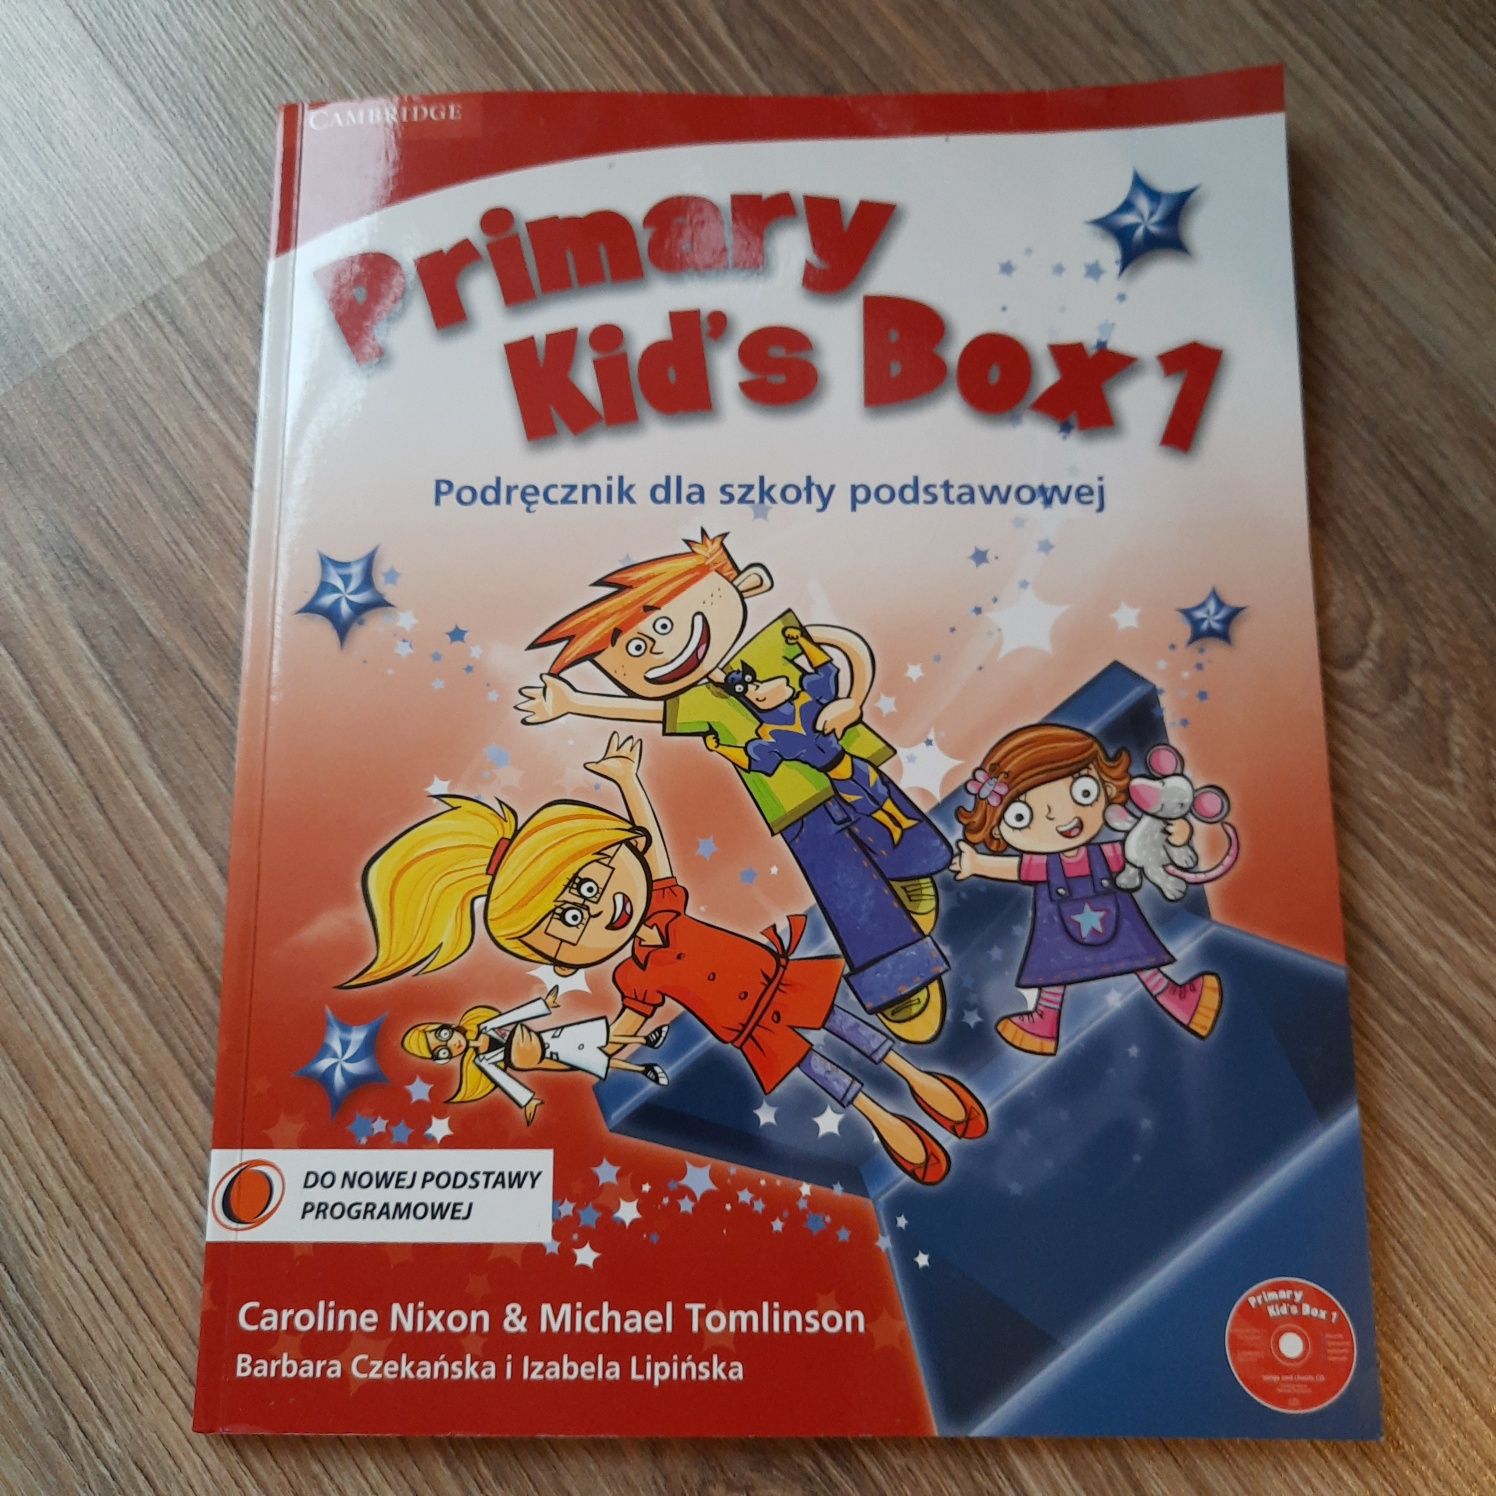 Podręcznik Primary Kid's Box 1 z płytą